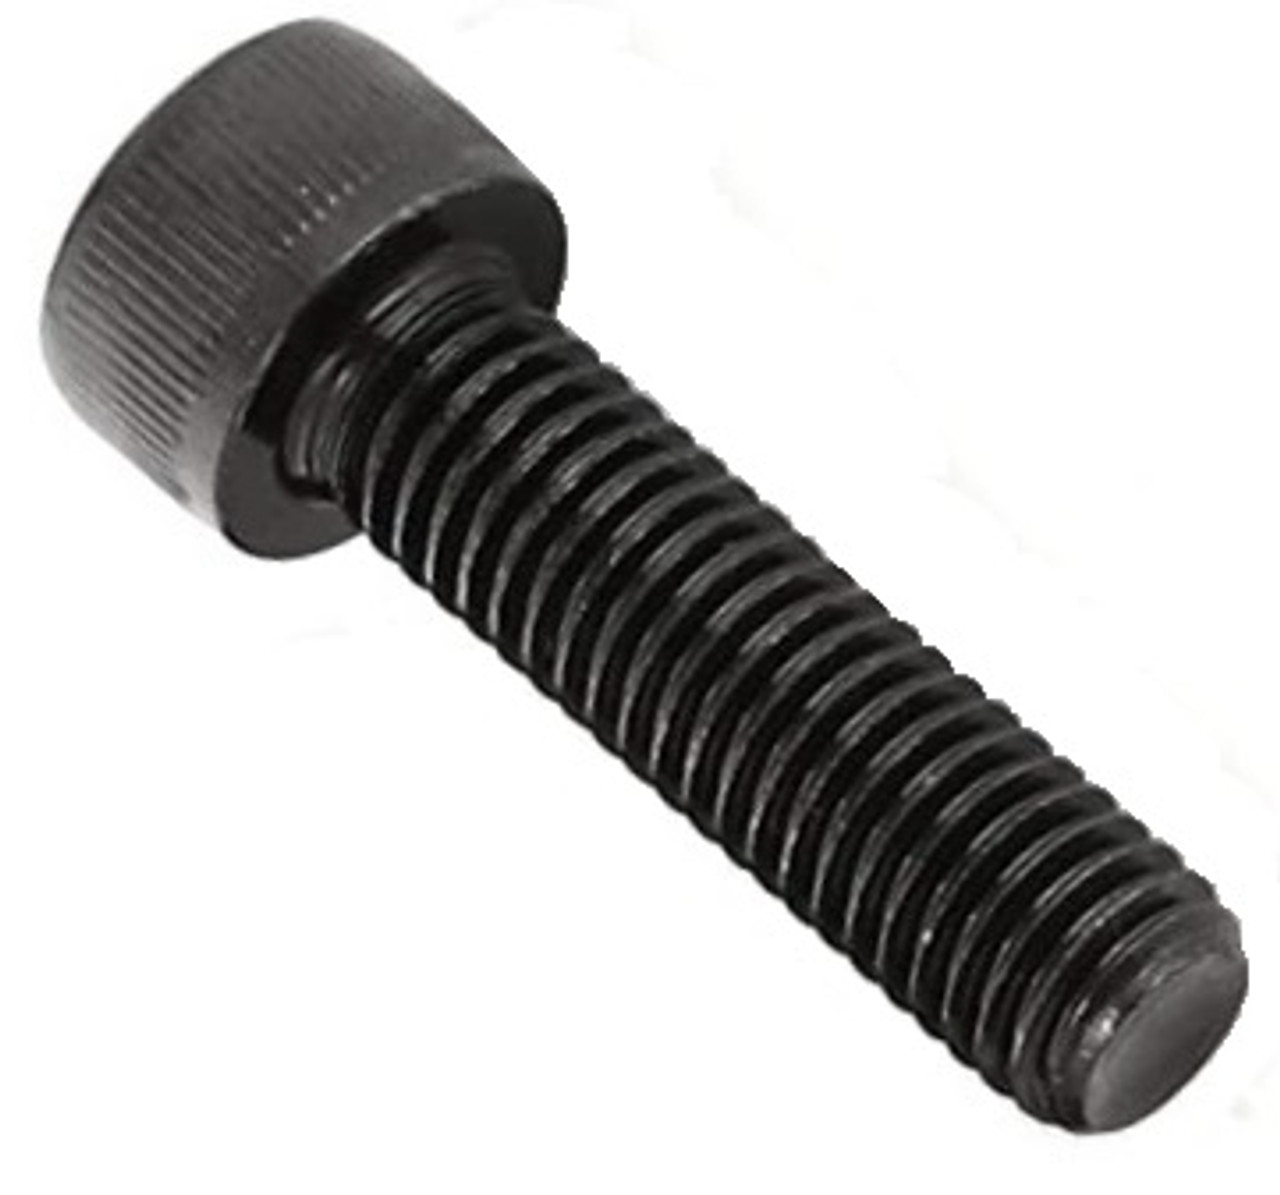 1/4"-20 UNC Socket Head Cap Screw - Black Oxide  011143 - 011613